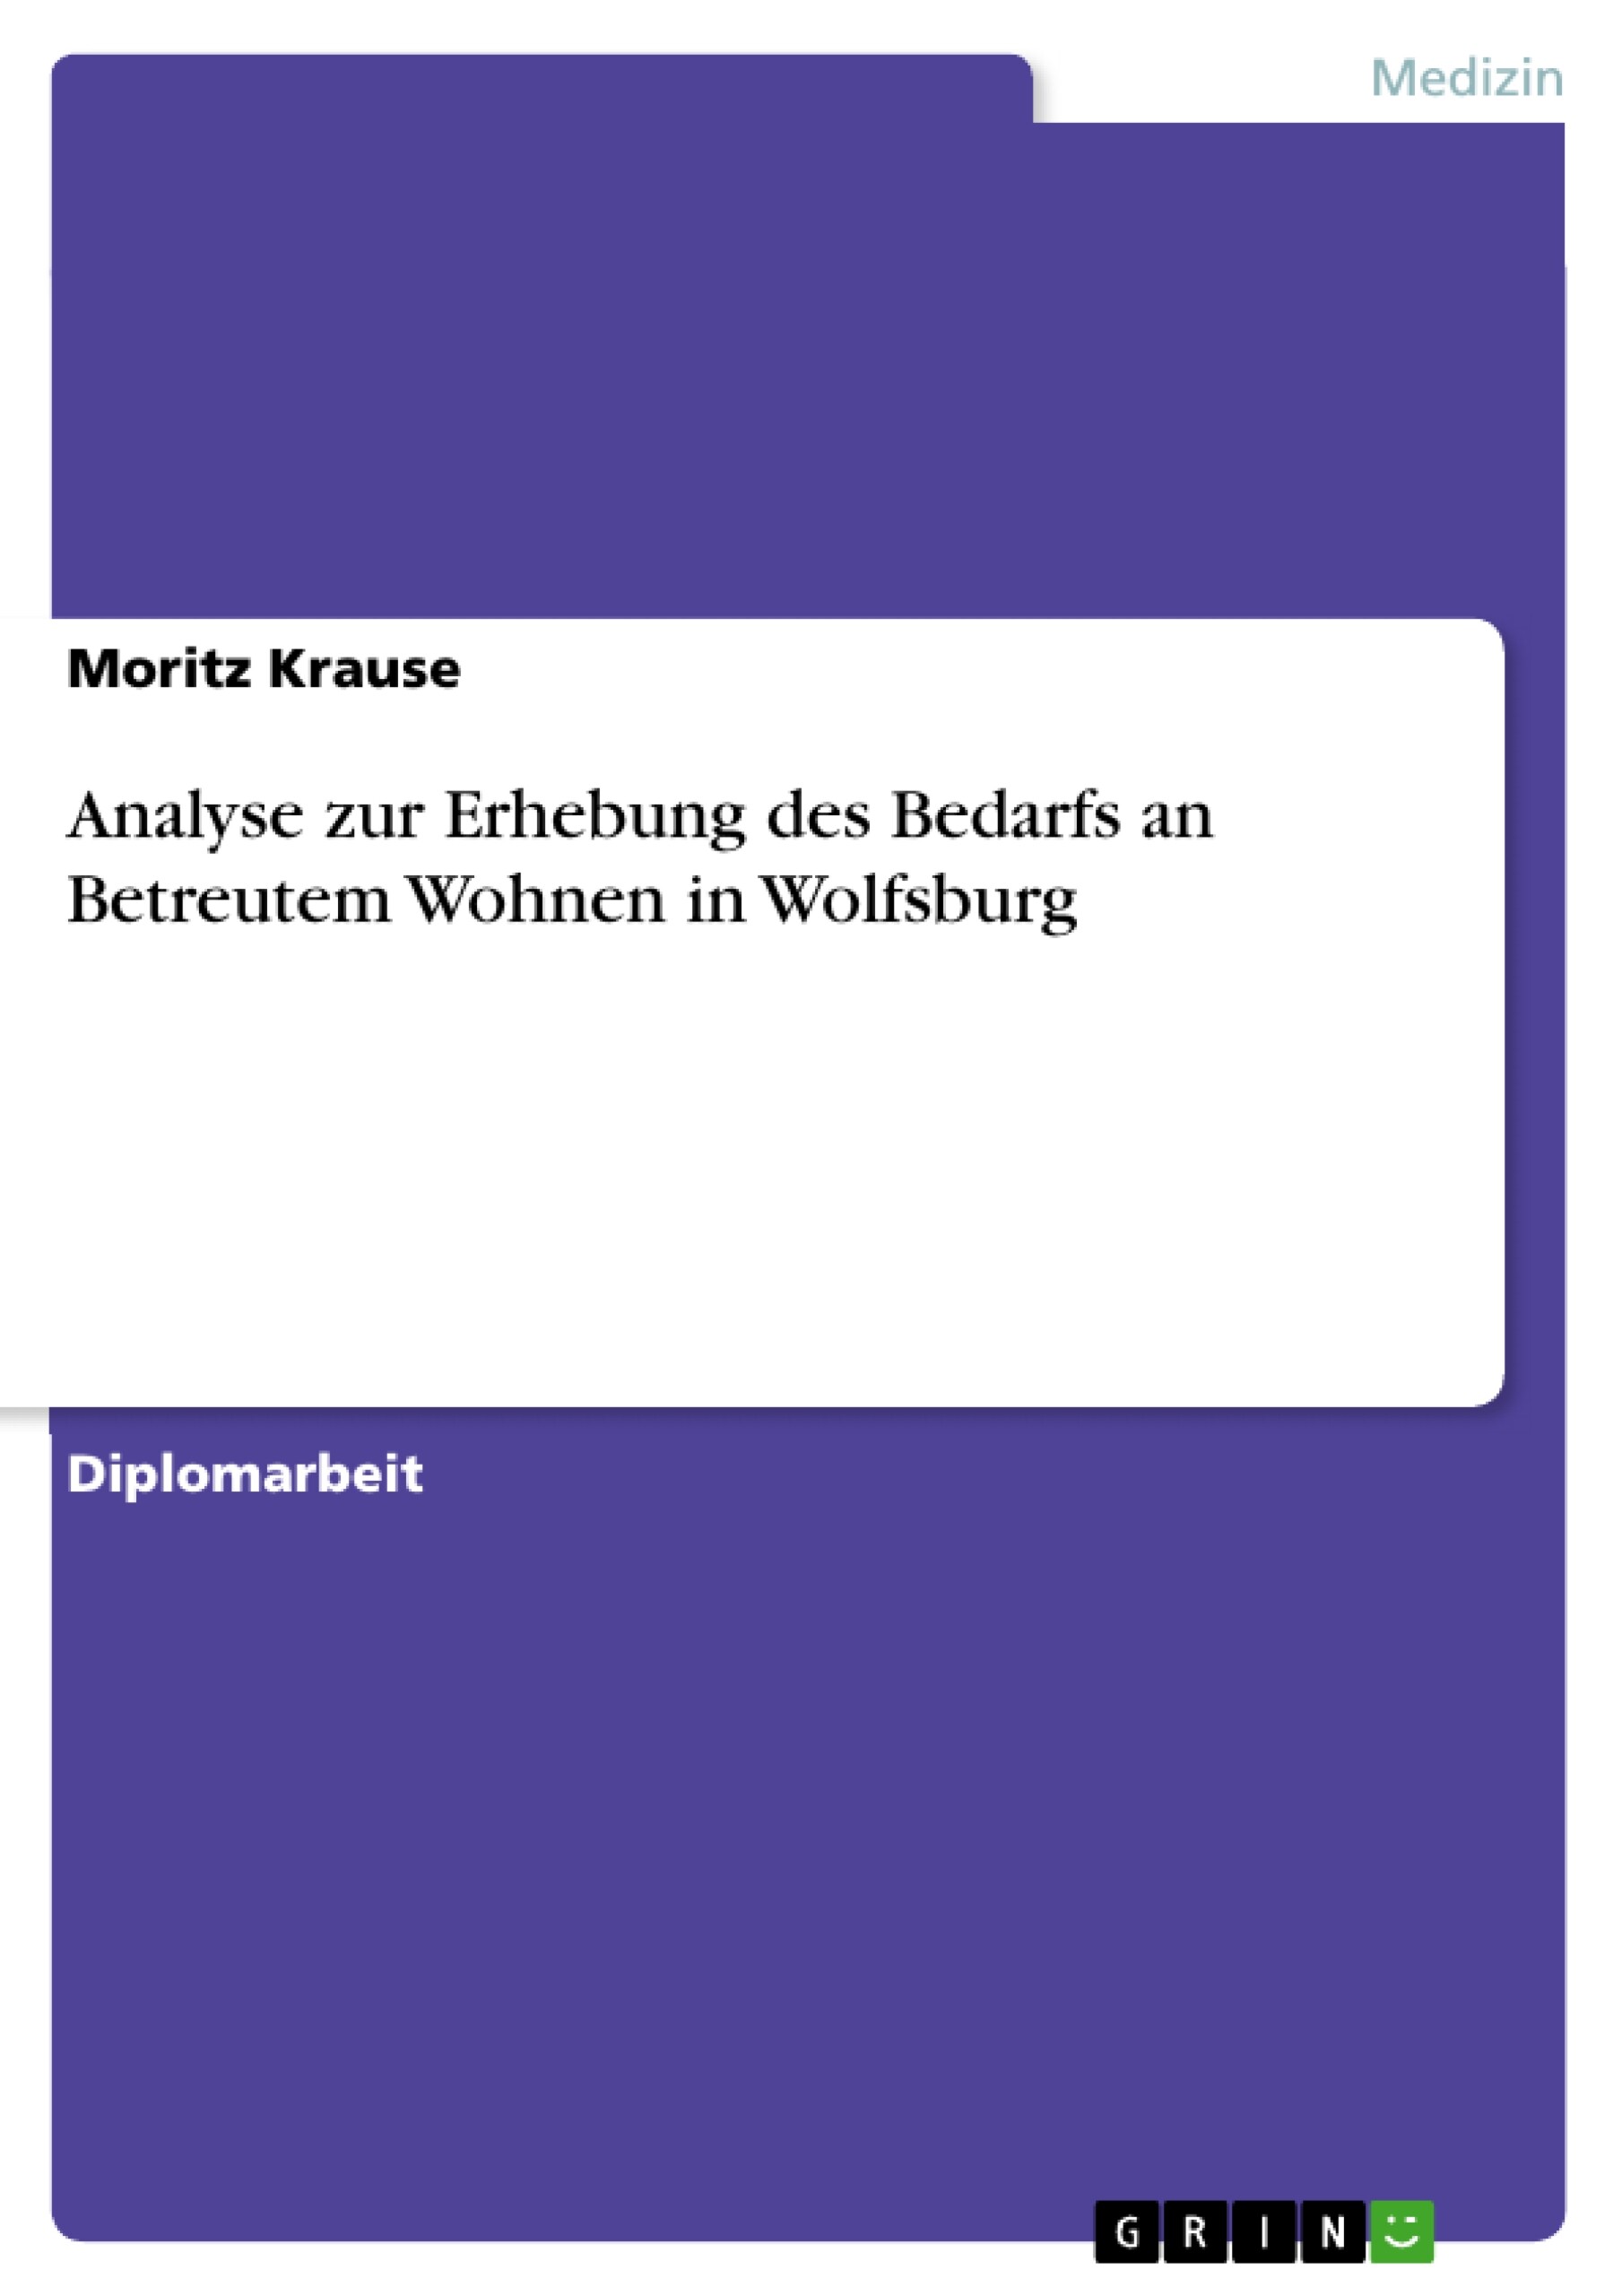 Analyse zur Erhebung des Bedarfs an Betreutem Wohnen in Wolfsburg